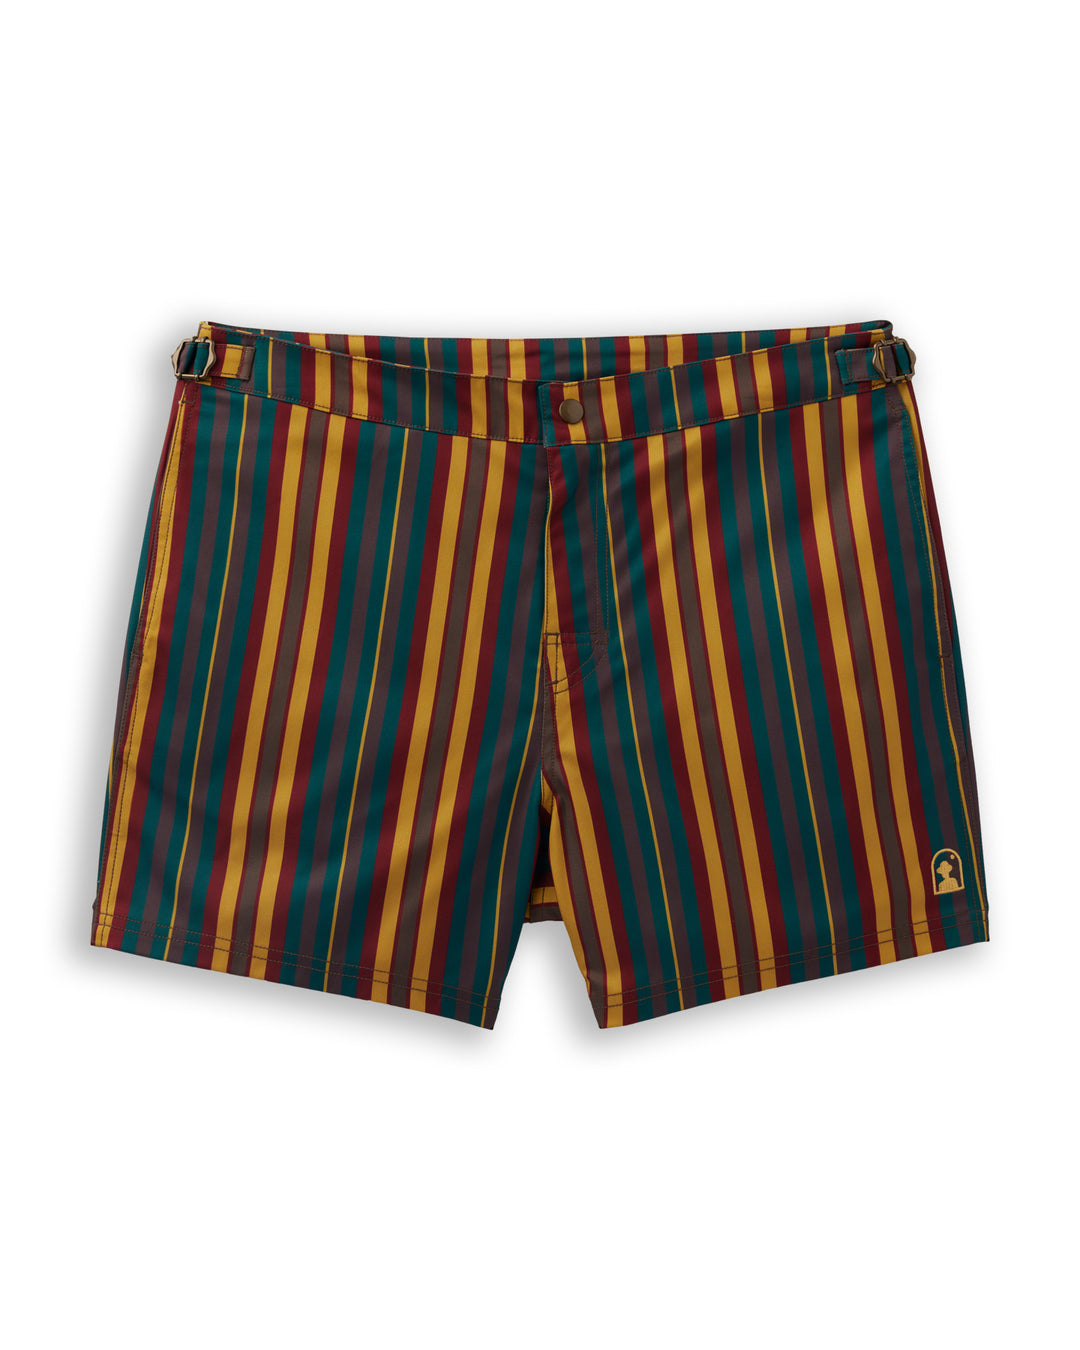 Dandy Del Mar's KingstonStripe belt shorts